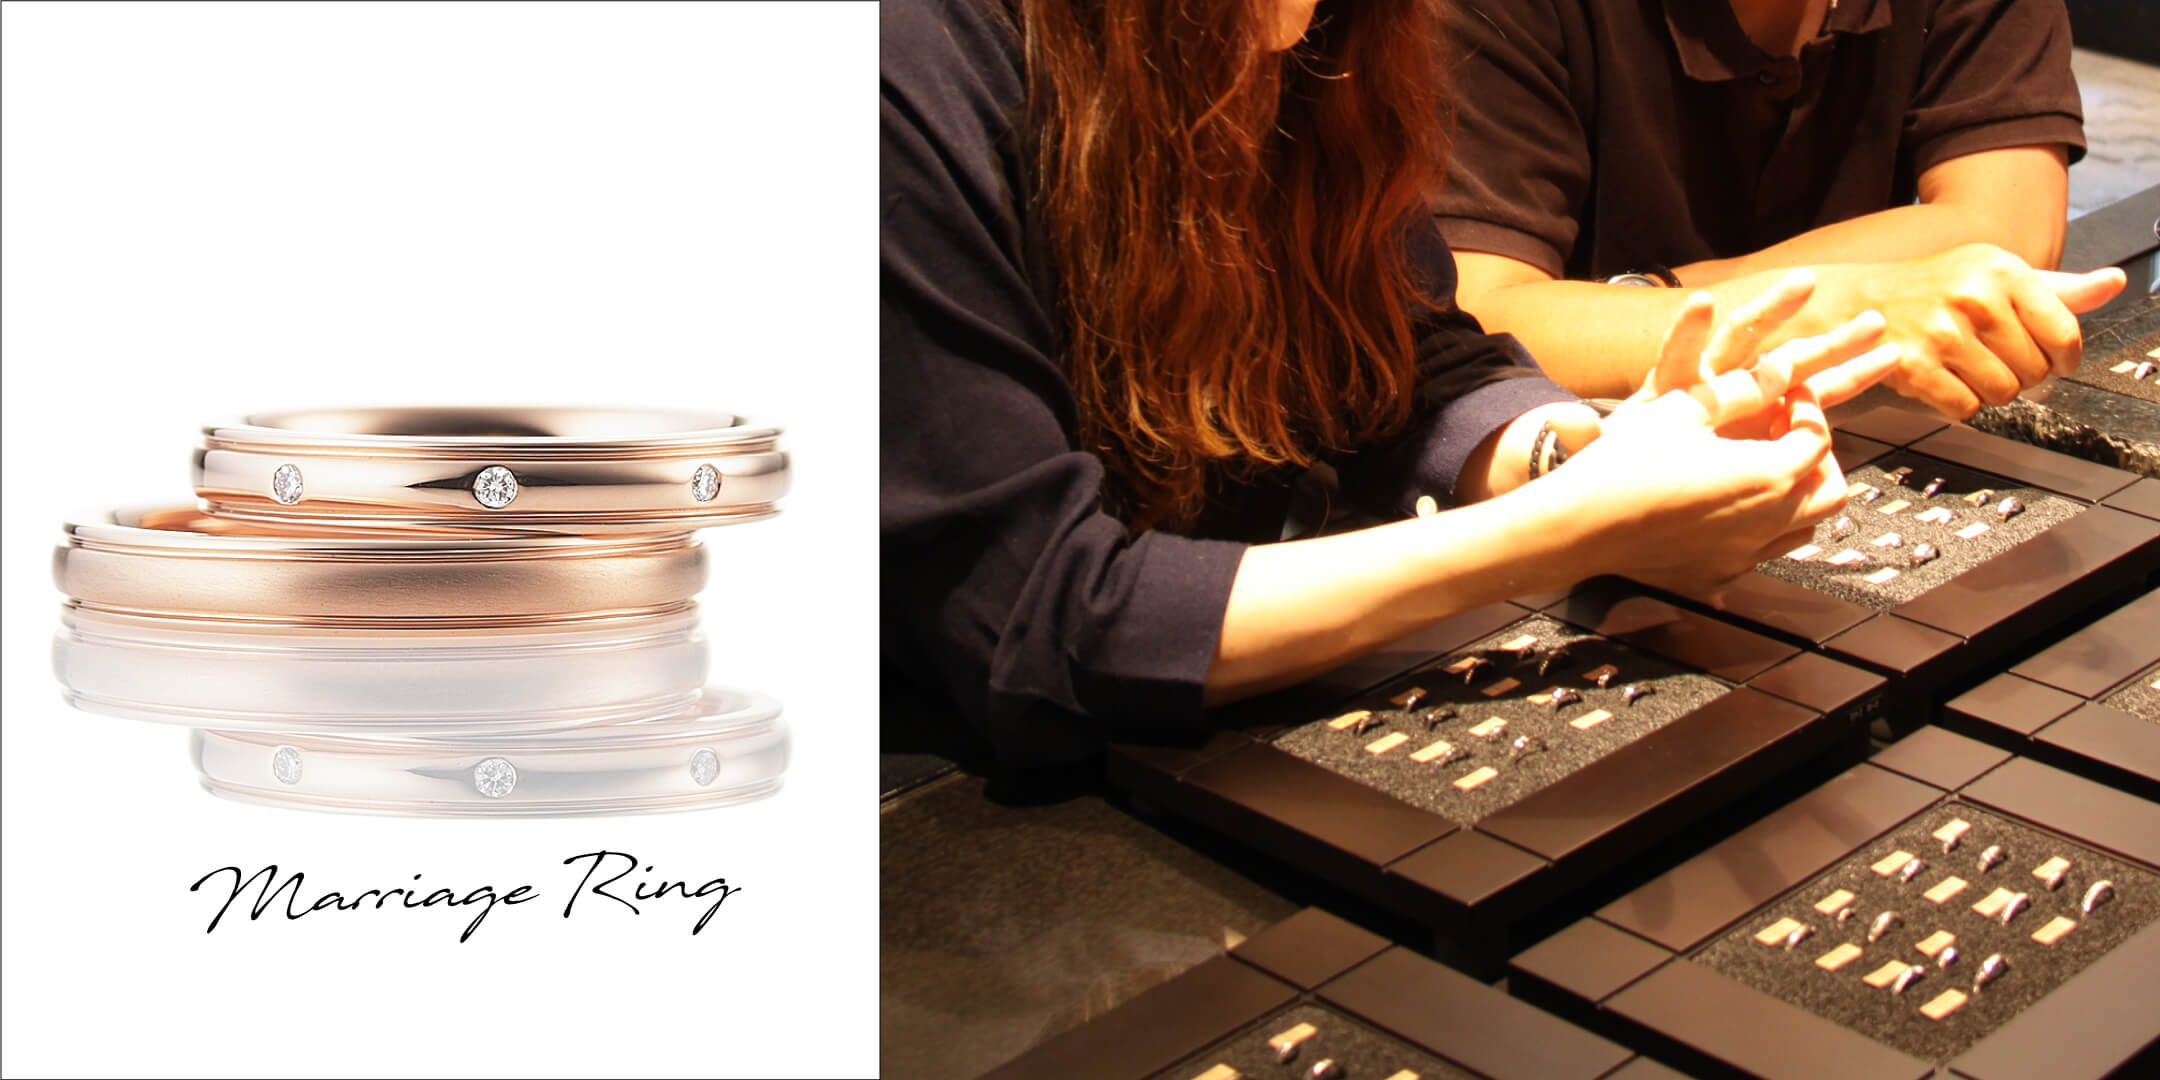 ピンクゴールドのペアの結婚指輪と、カップルが指輪選びをしているシーン。